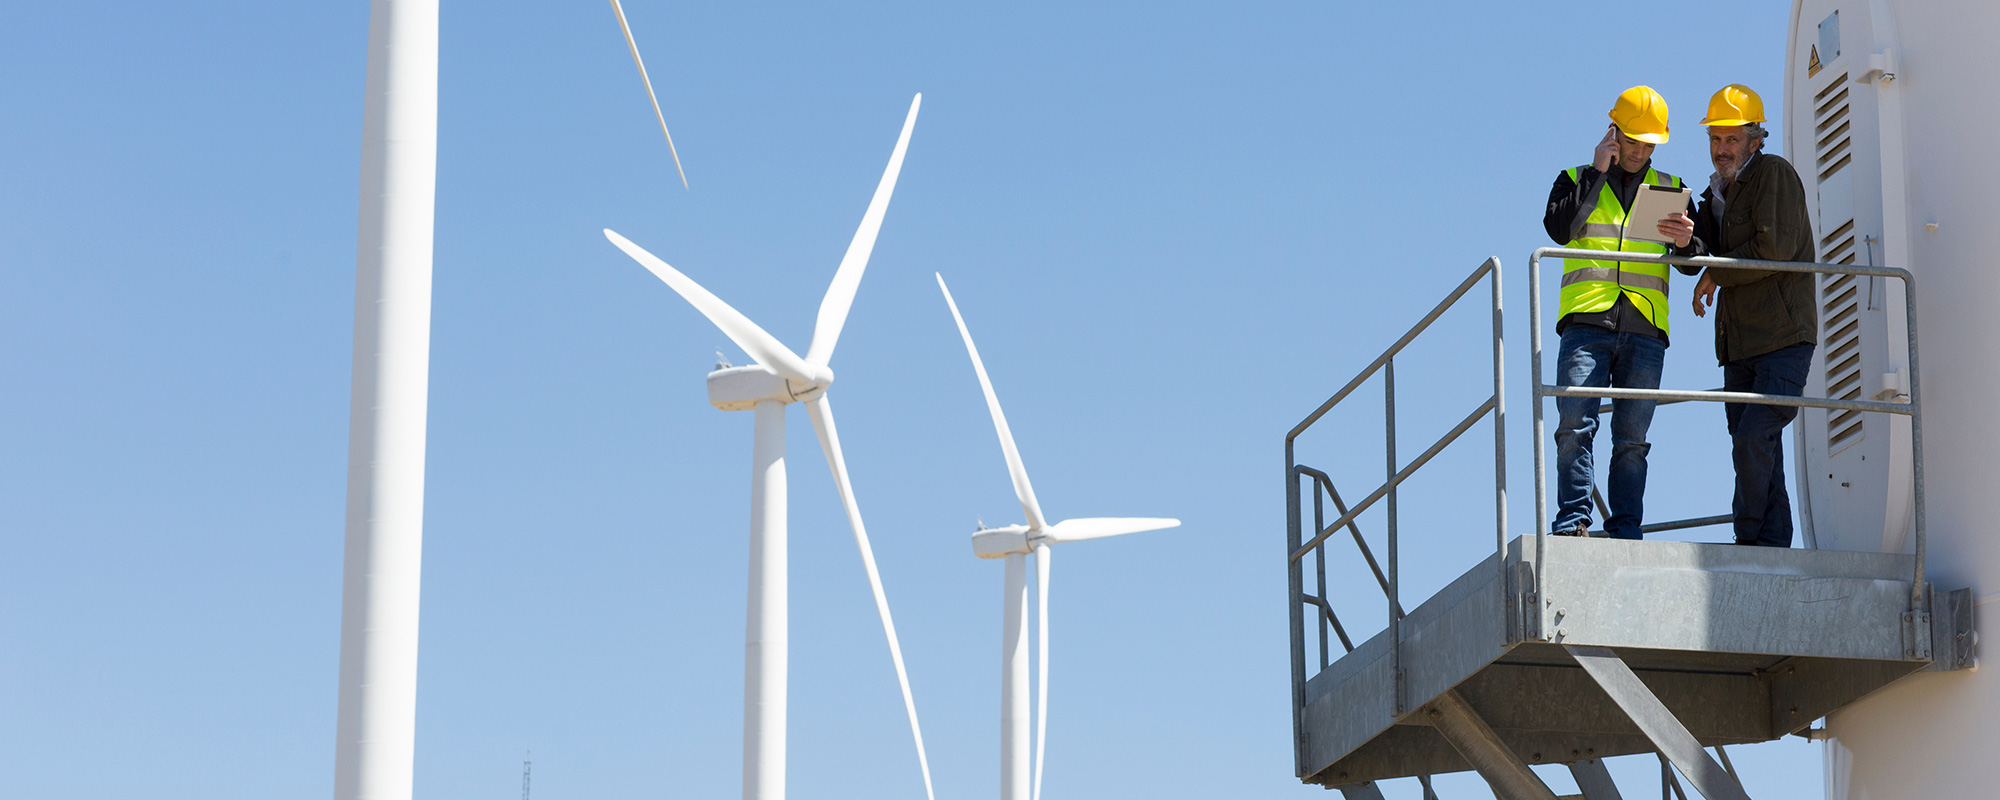 Servicetechniker:innen für Windenergieanlagen
